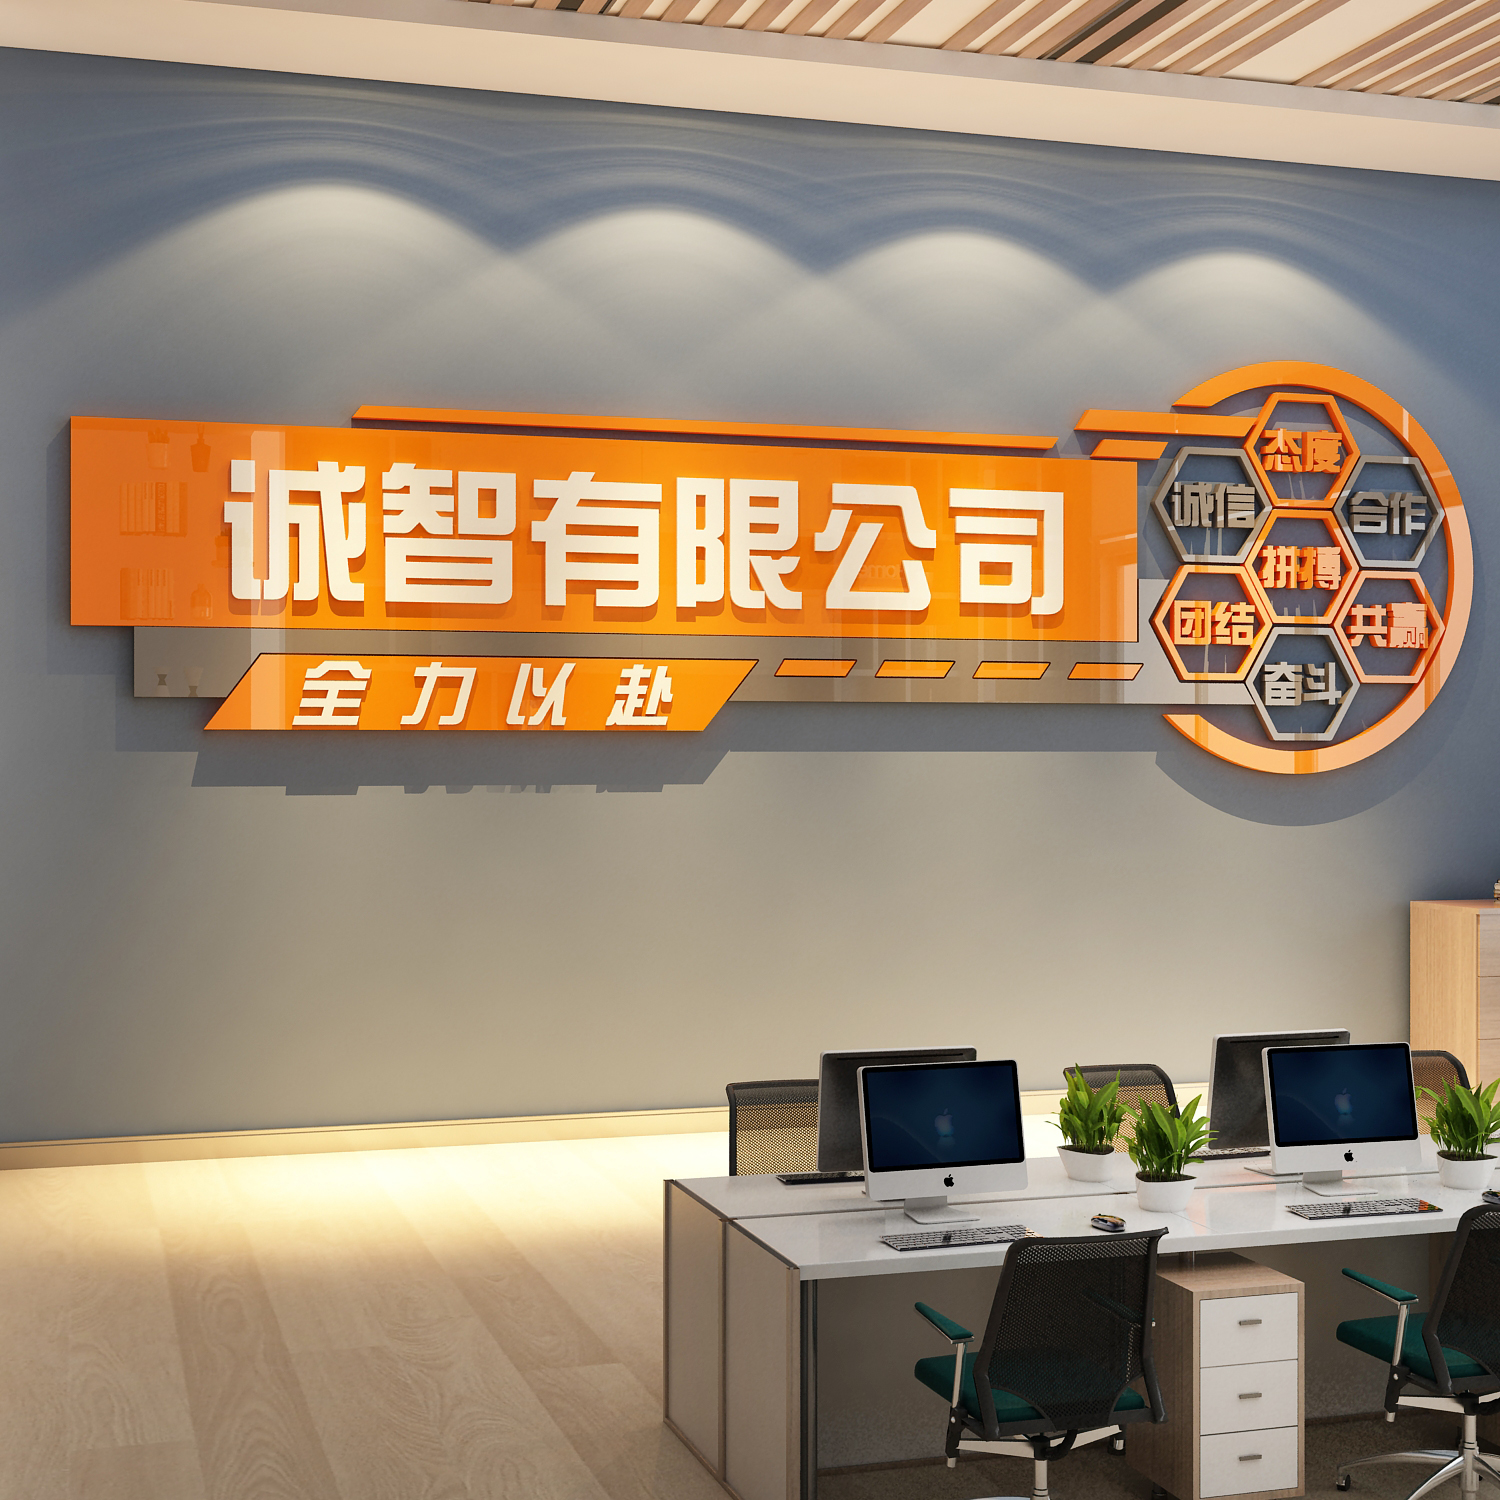 办公室墙面装饰企业文化司名字进门形象前台背景logo设计效果图贴